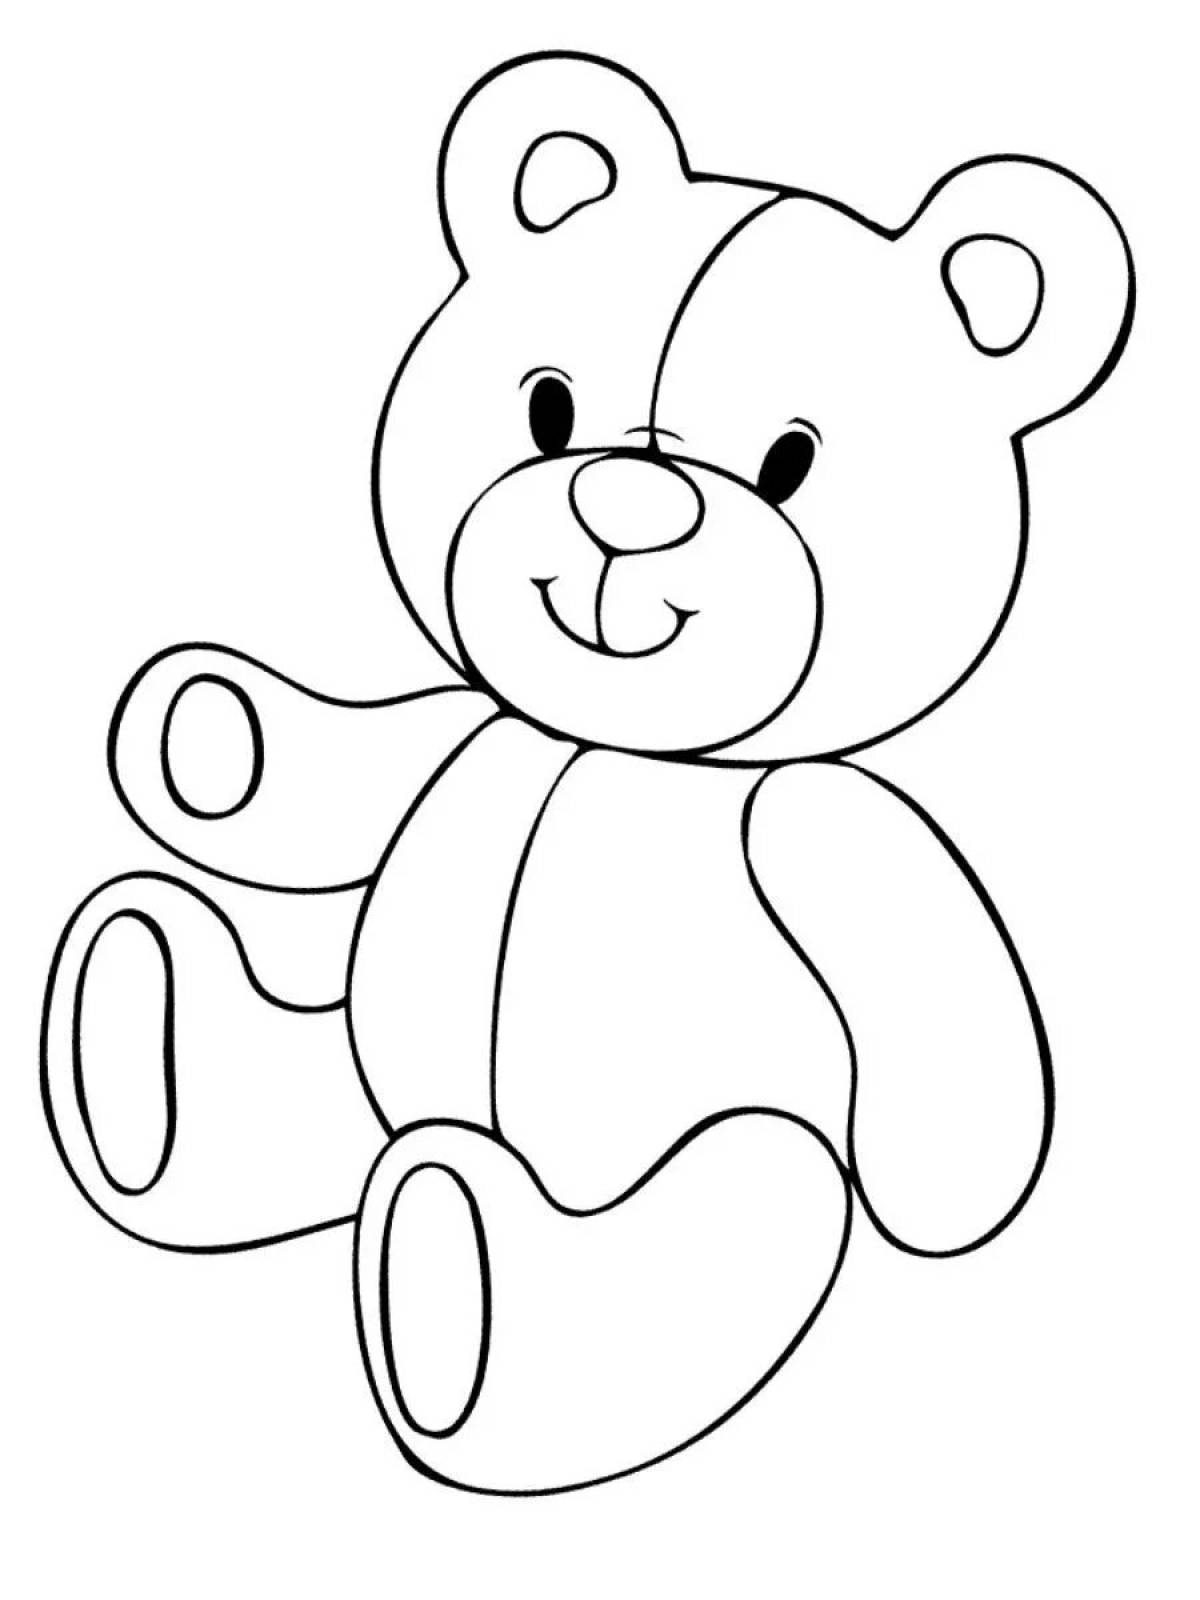 Teddy bear #7